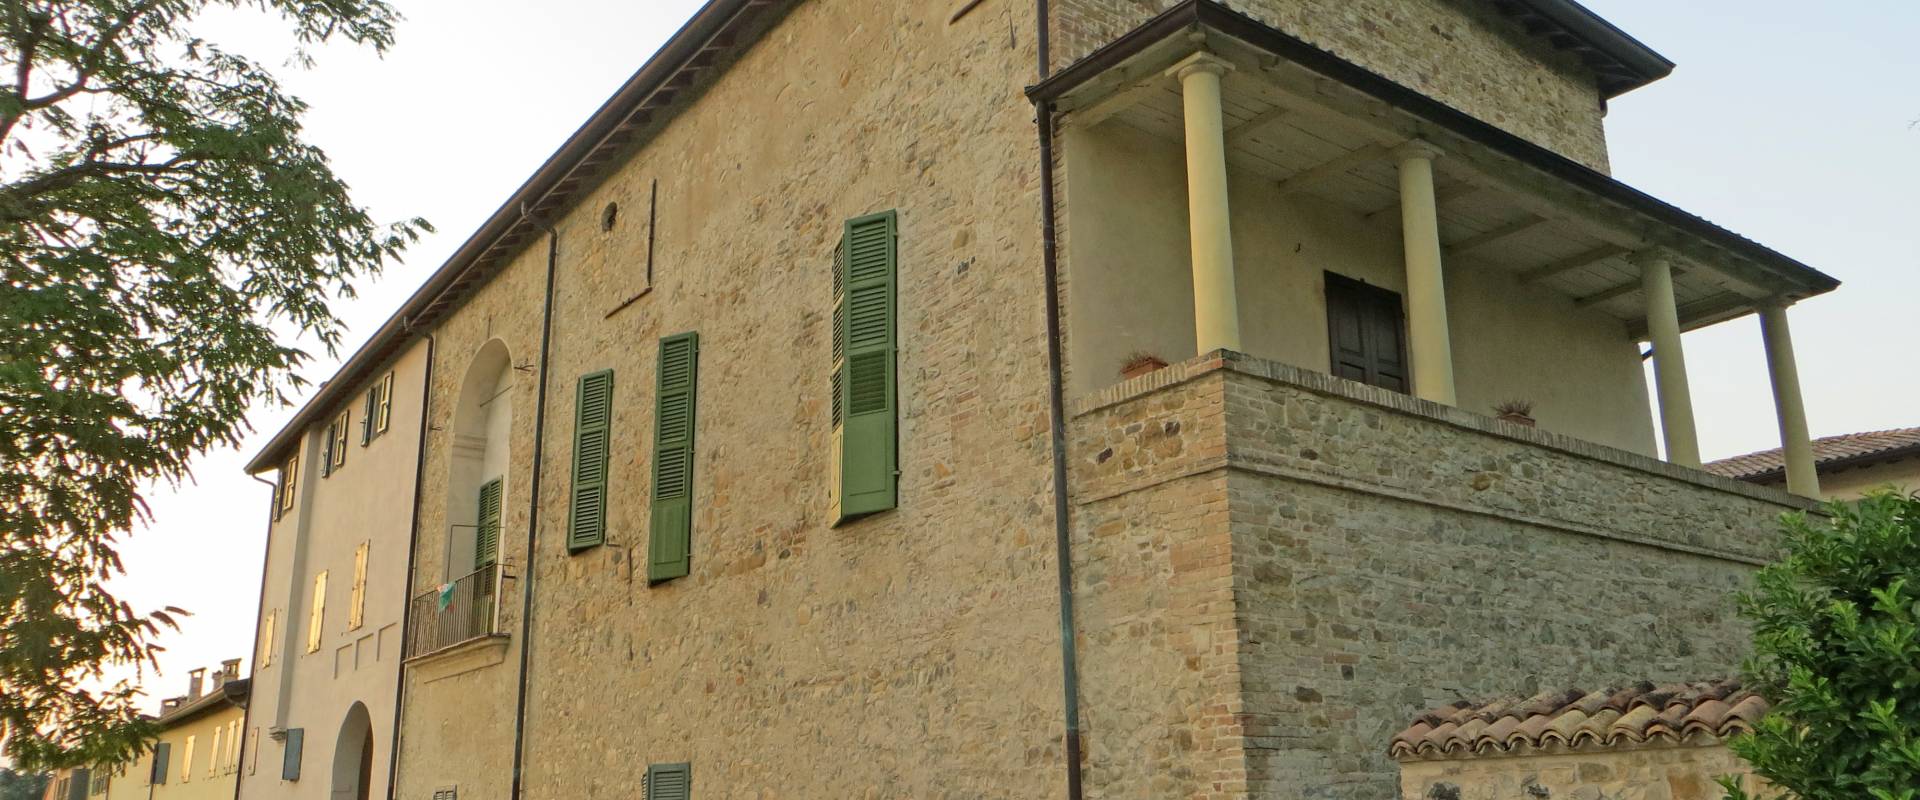 Rocca Sanvitale (Sala Baganza) - angolo sud-ovest 2 2019-09-16 foto di Parma198